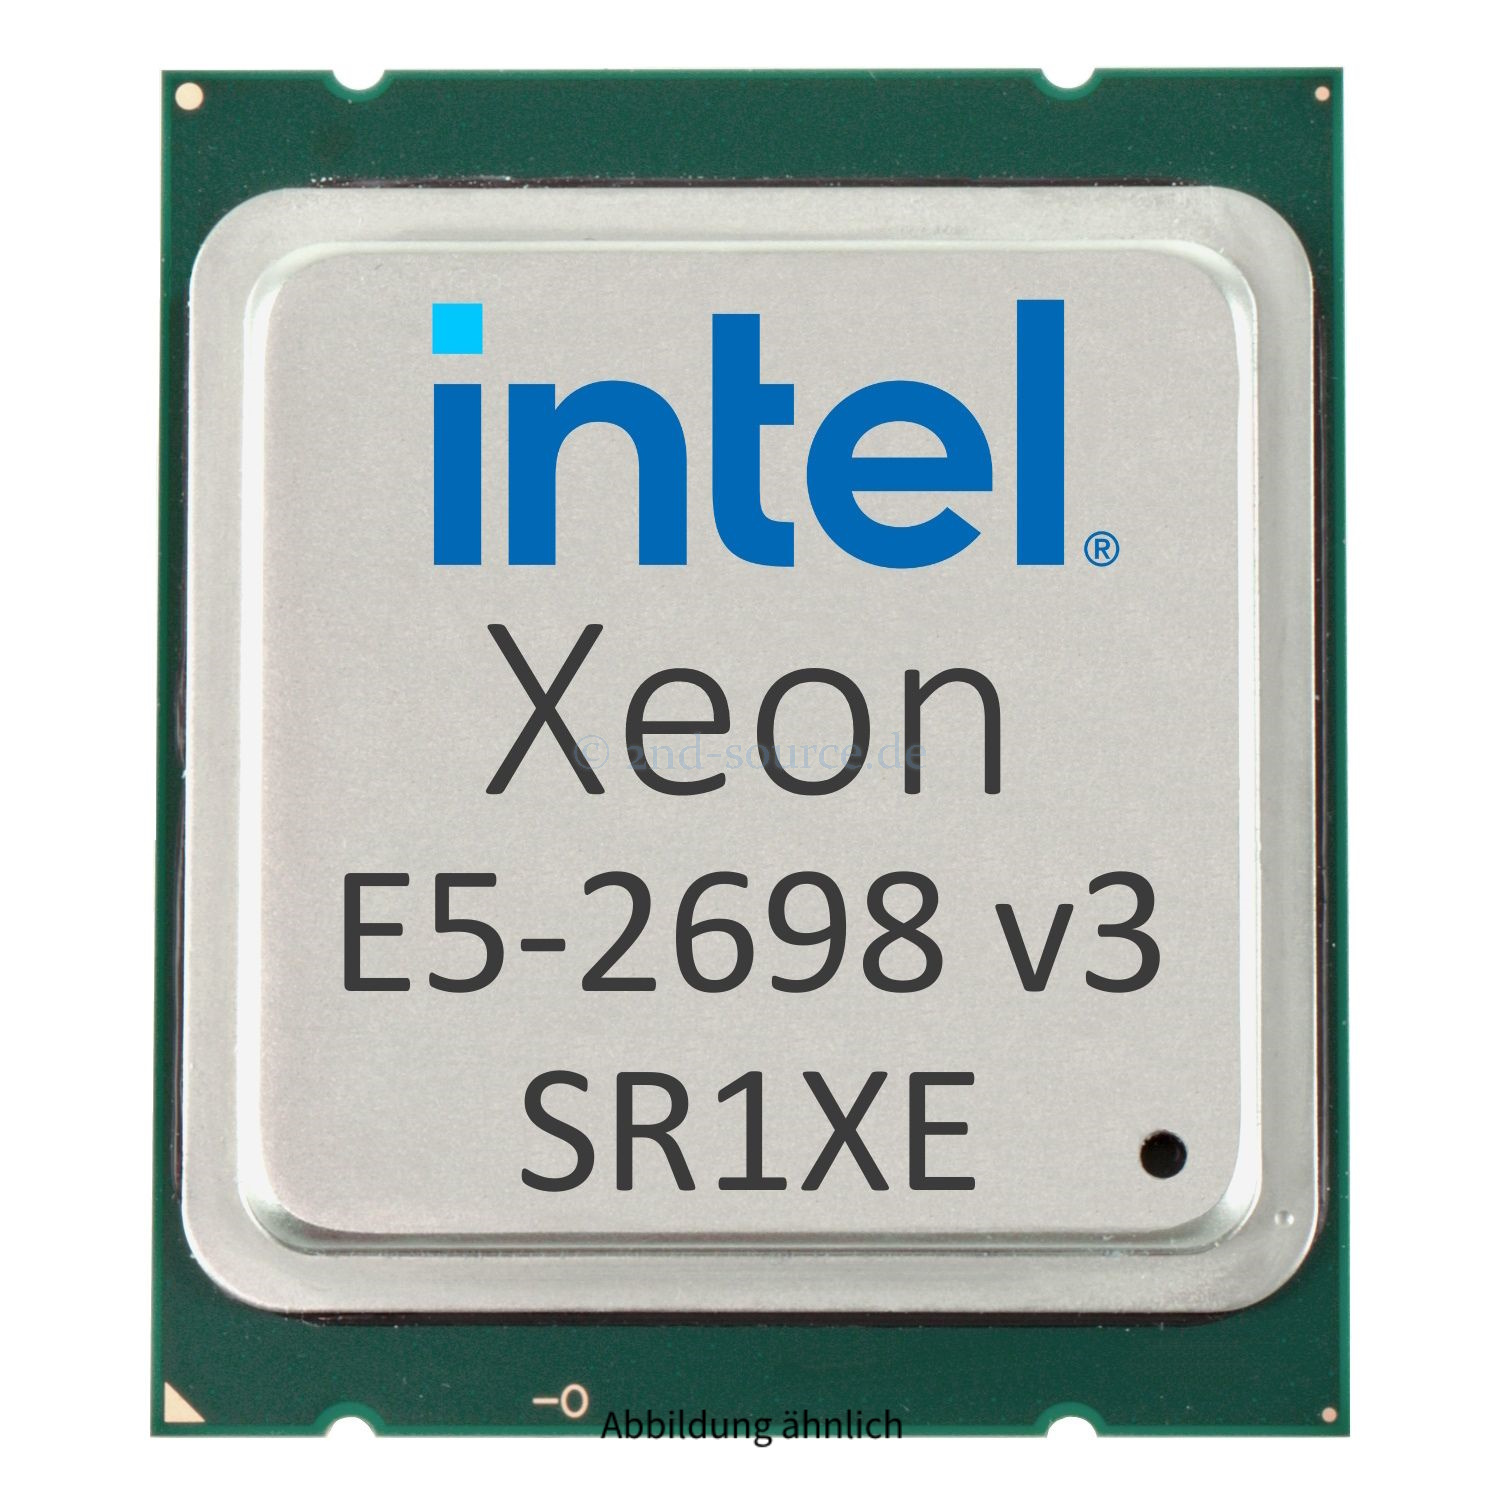 Intel Xeon E5-2698 v3 2.30GHz 40MB 16-Core CPU 135W SR1XE CM8064401609800